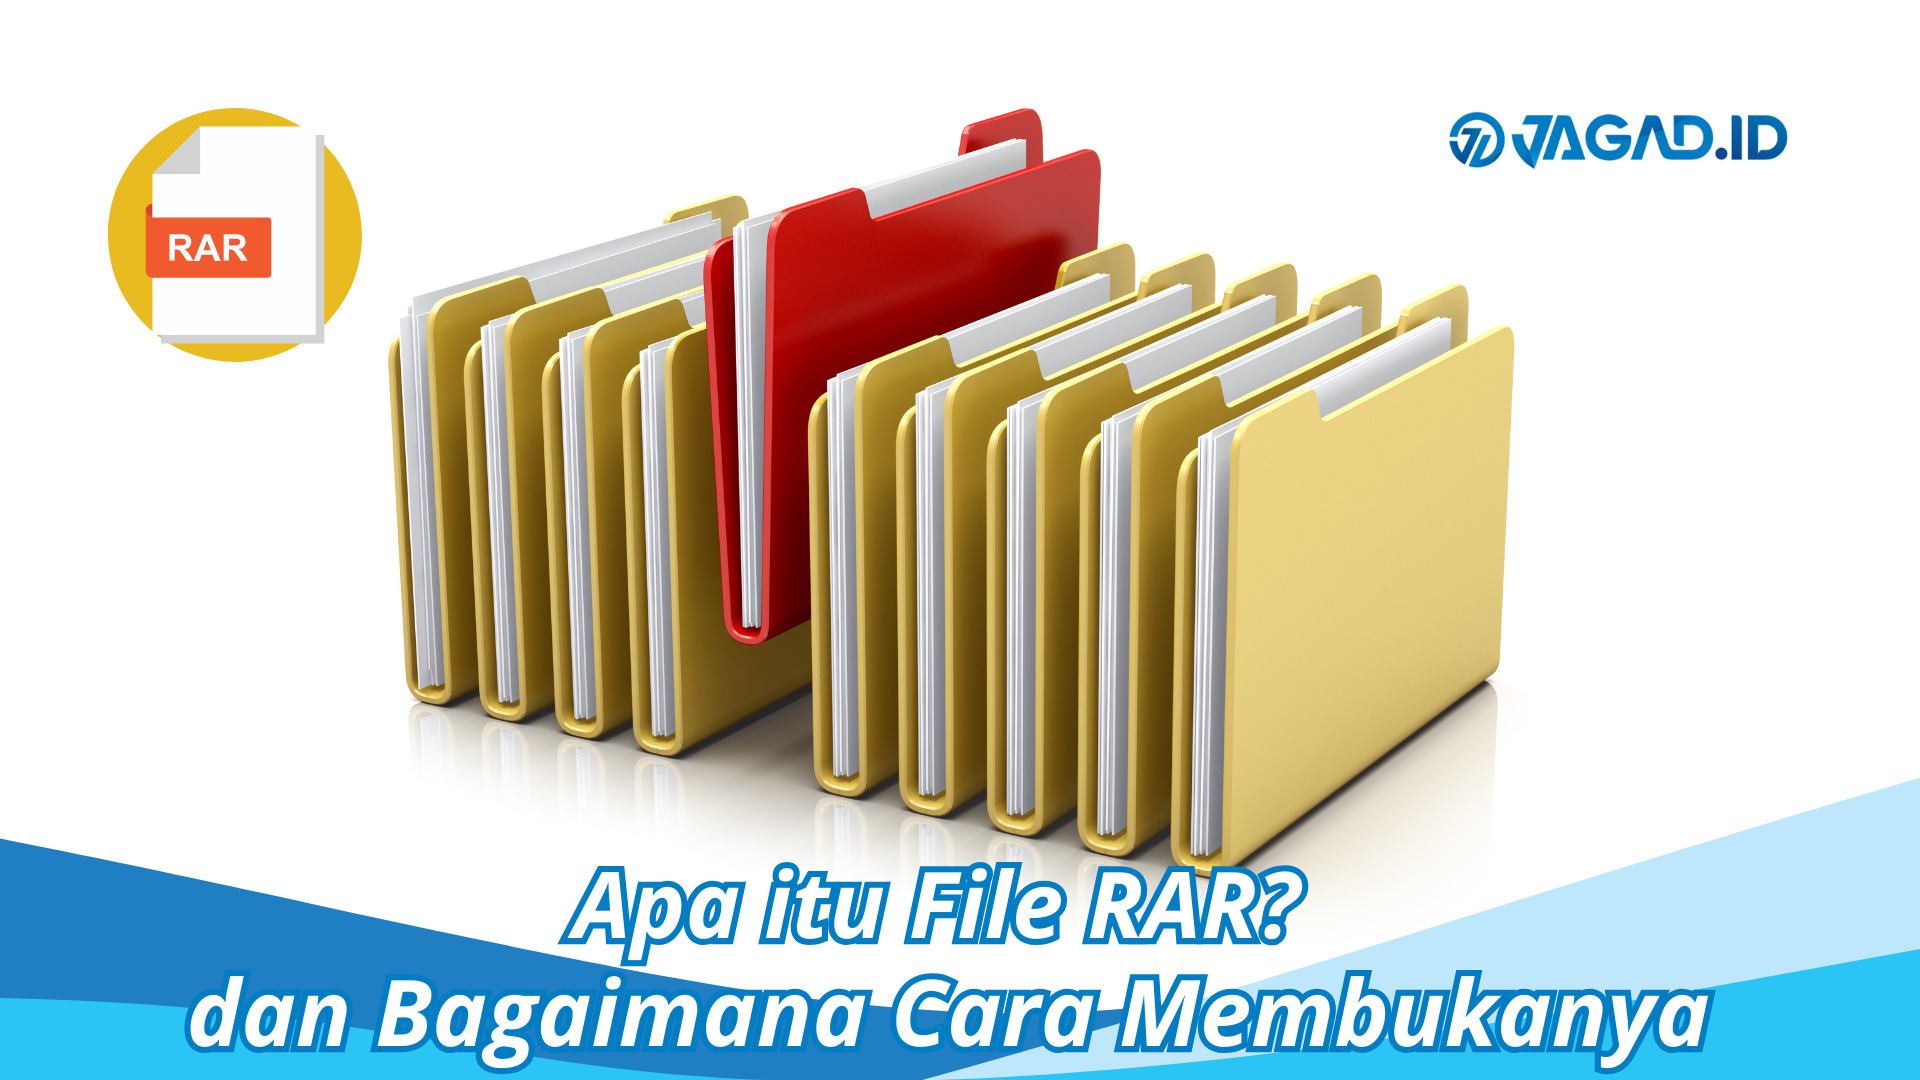 Apa itu File RAR